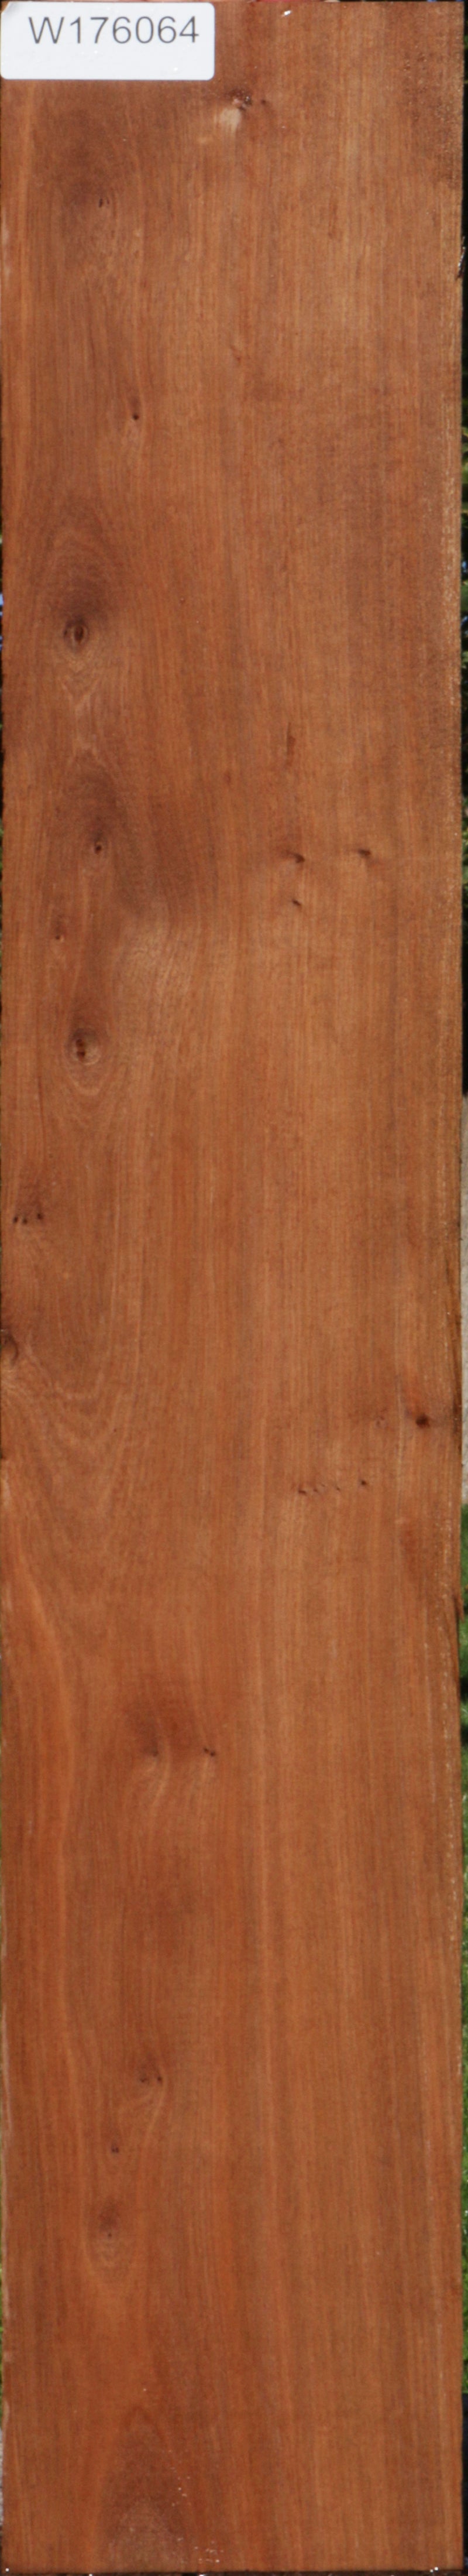 Ohia Lumber